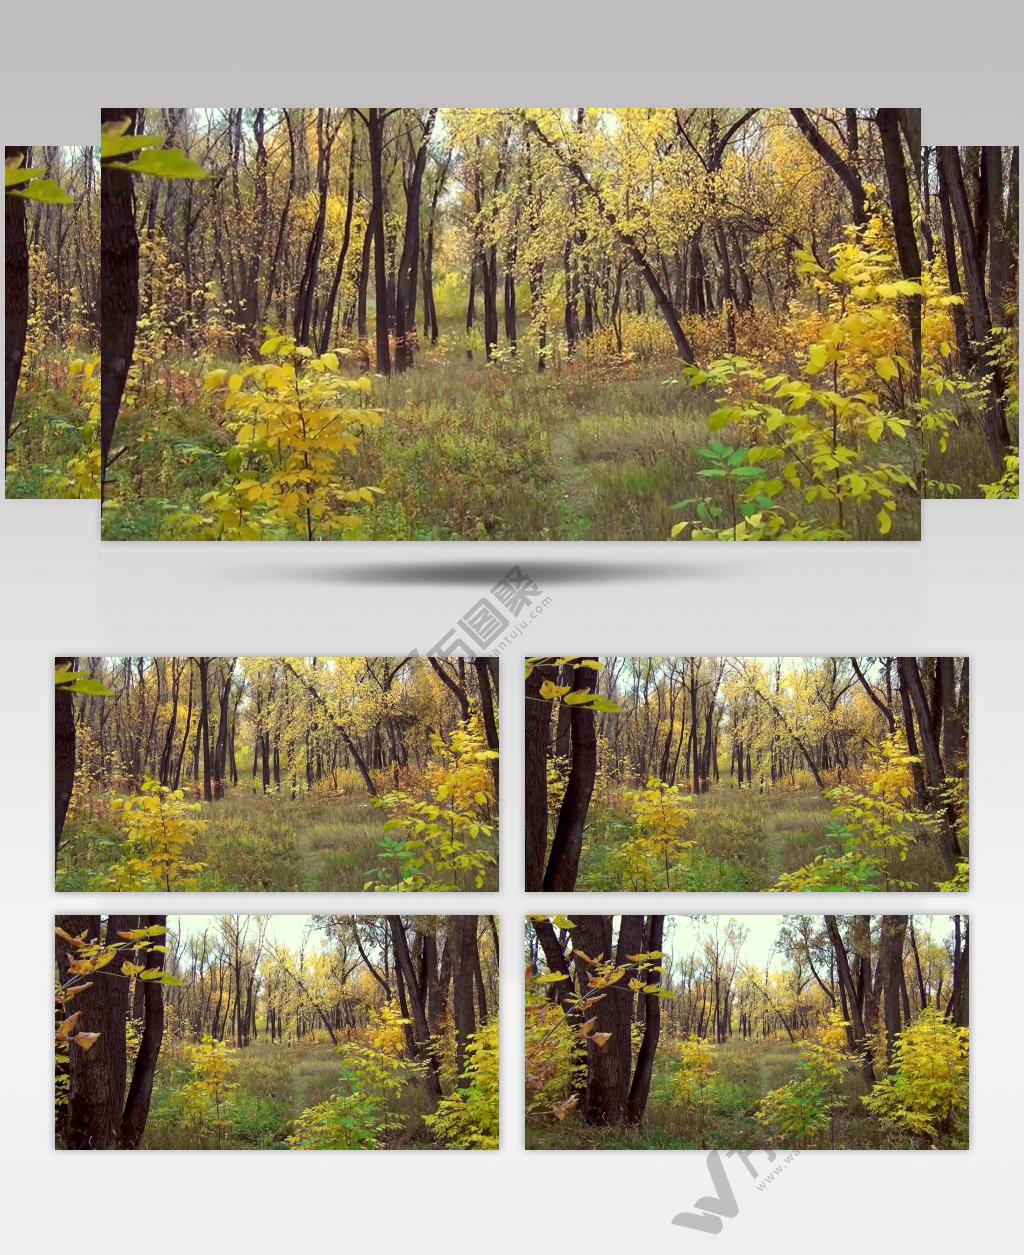 树林树木秋天风景 AM053-35植物 视频下载